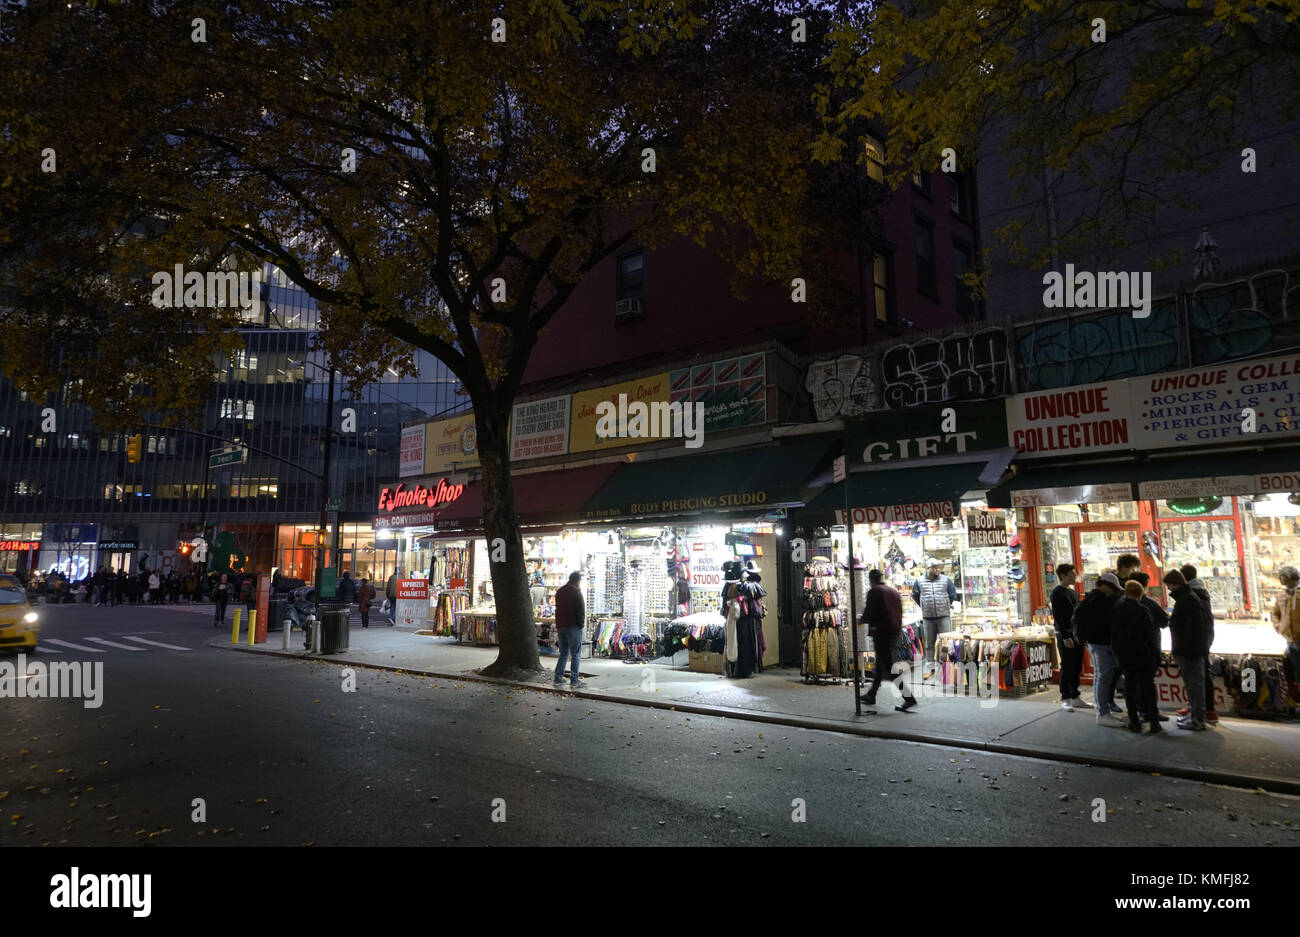 La vue de nuit de St.Mark's place.East Village.Manhattan.New York City.USA Banque D'Images